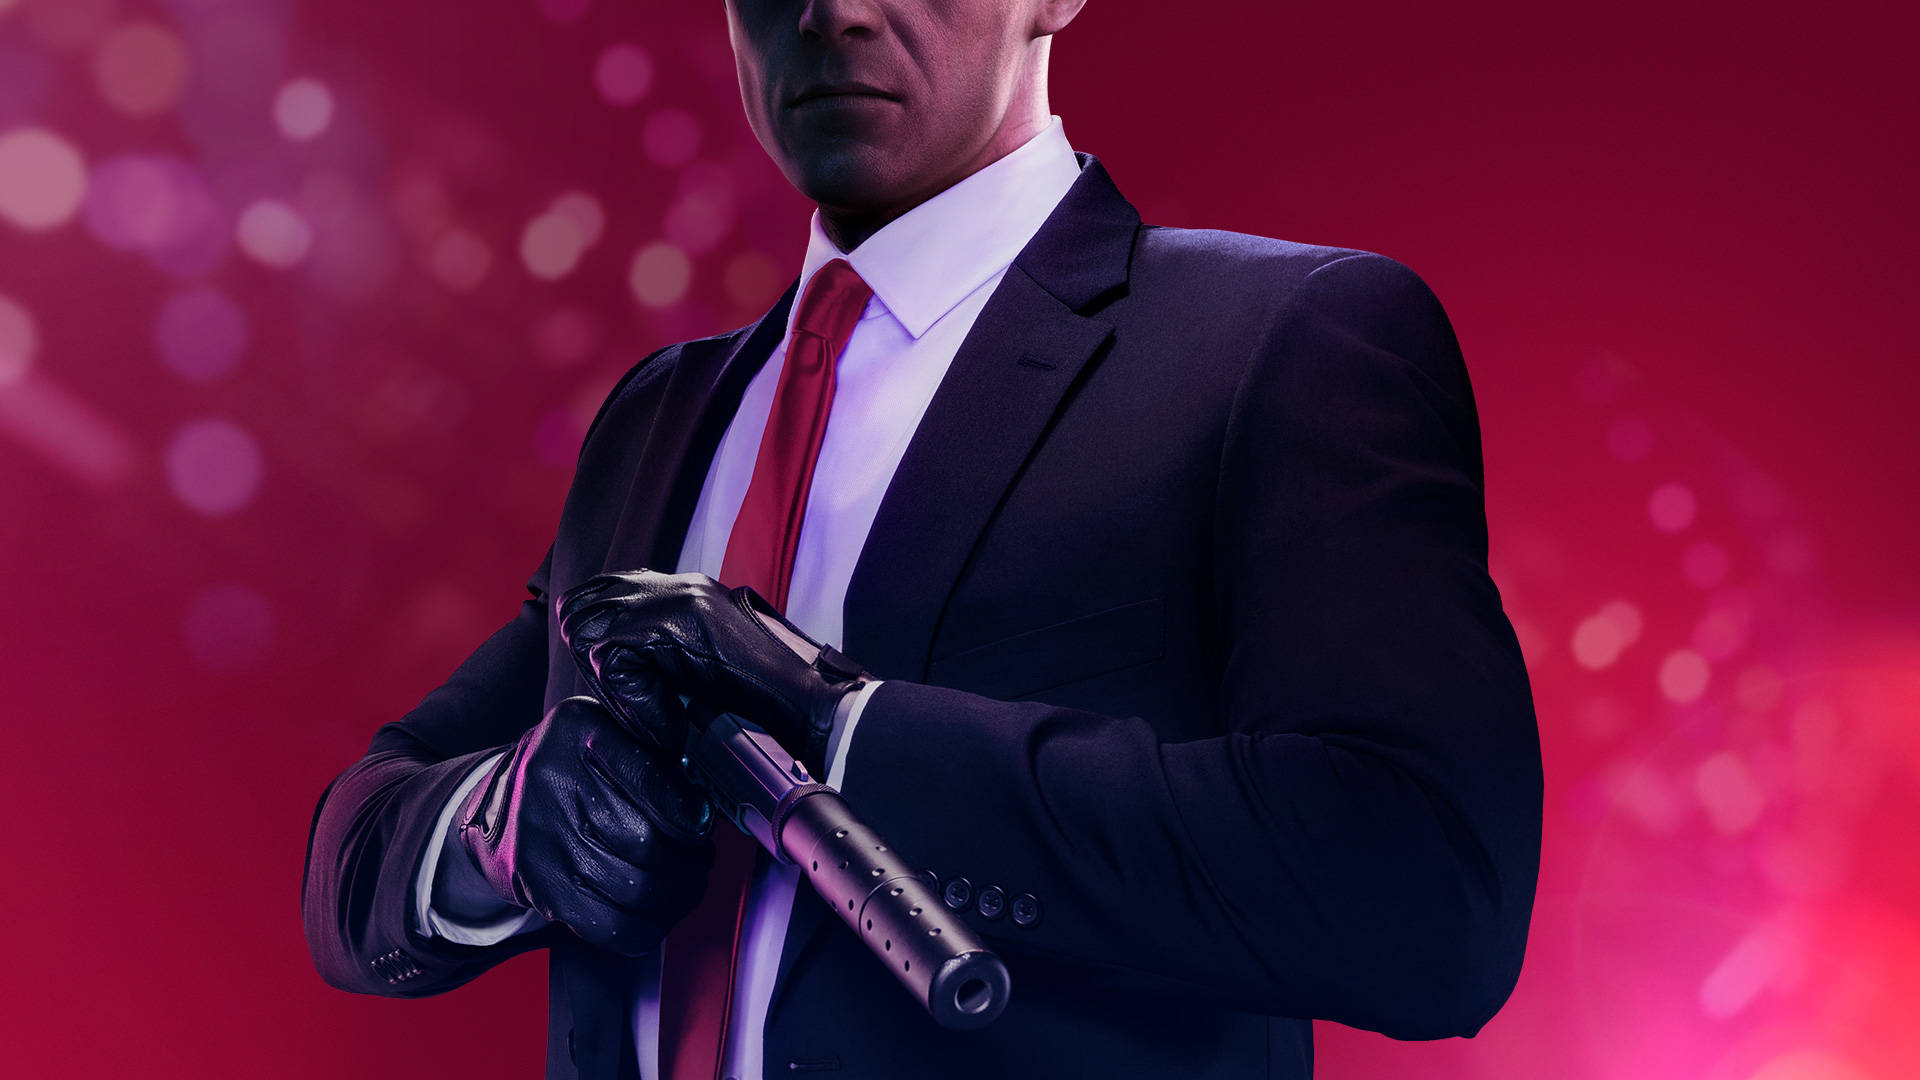 A Man In A Suit Holding A Gun Wallpaper